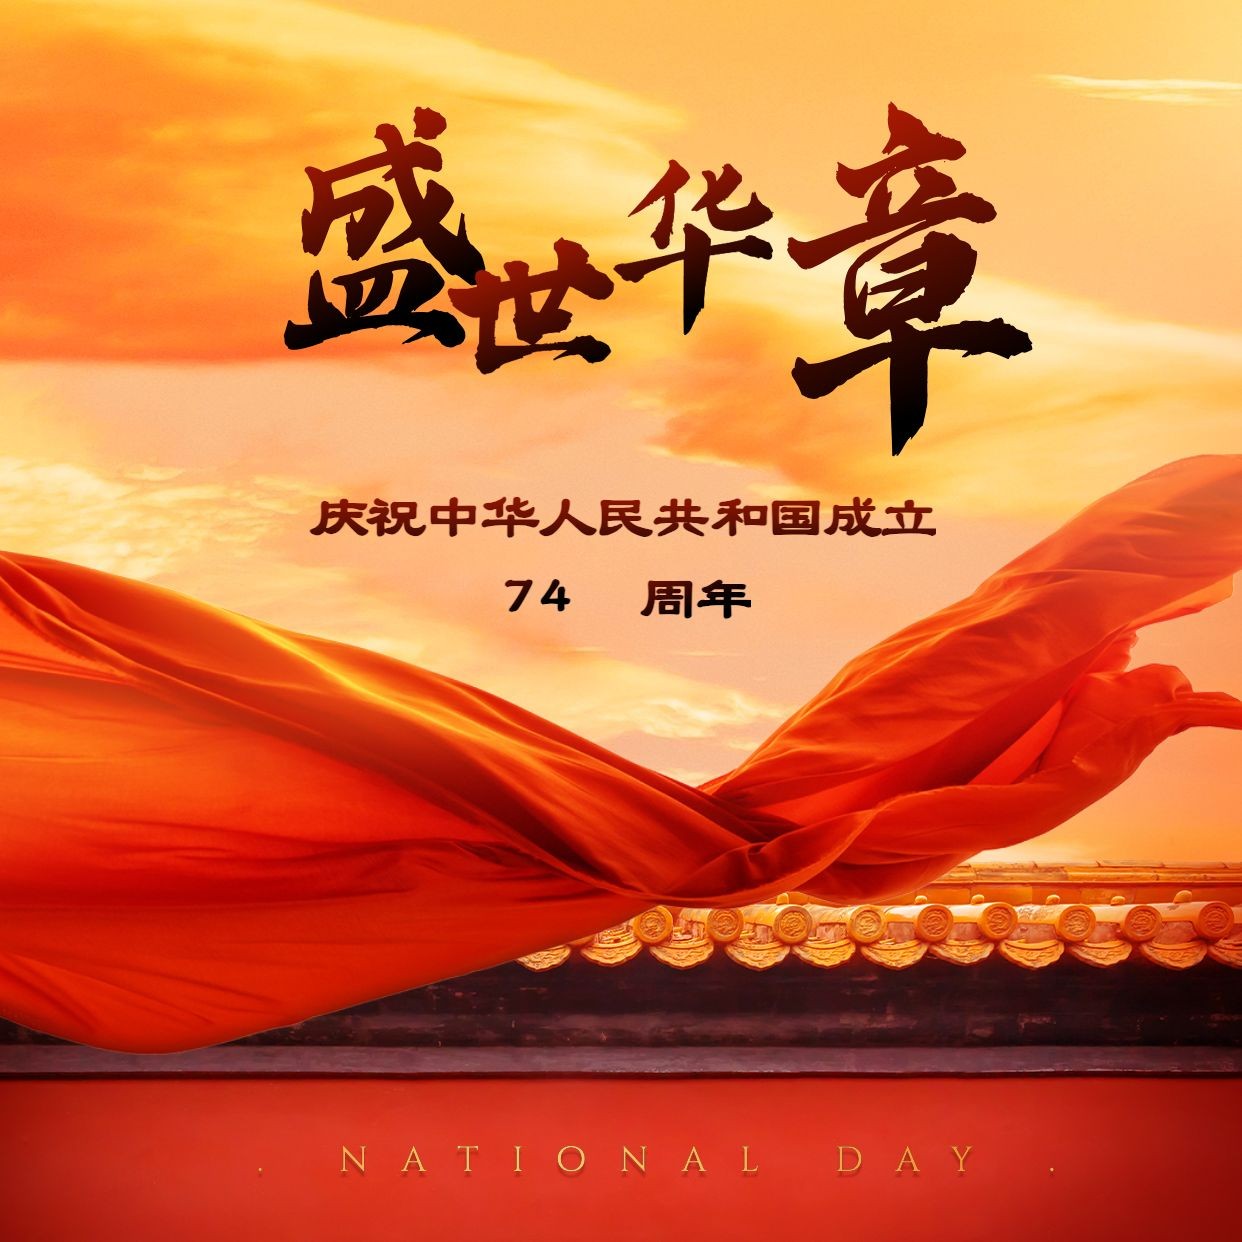 国庆节祝福红绸实景方形海报预览效果